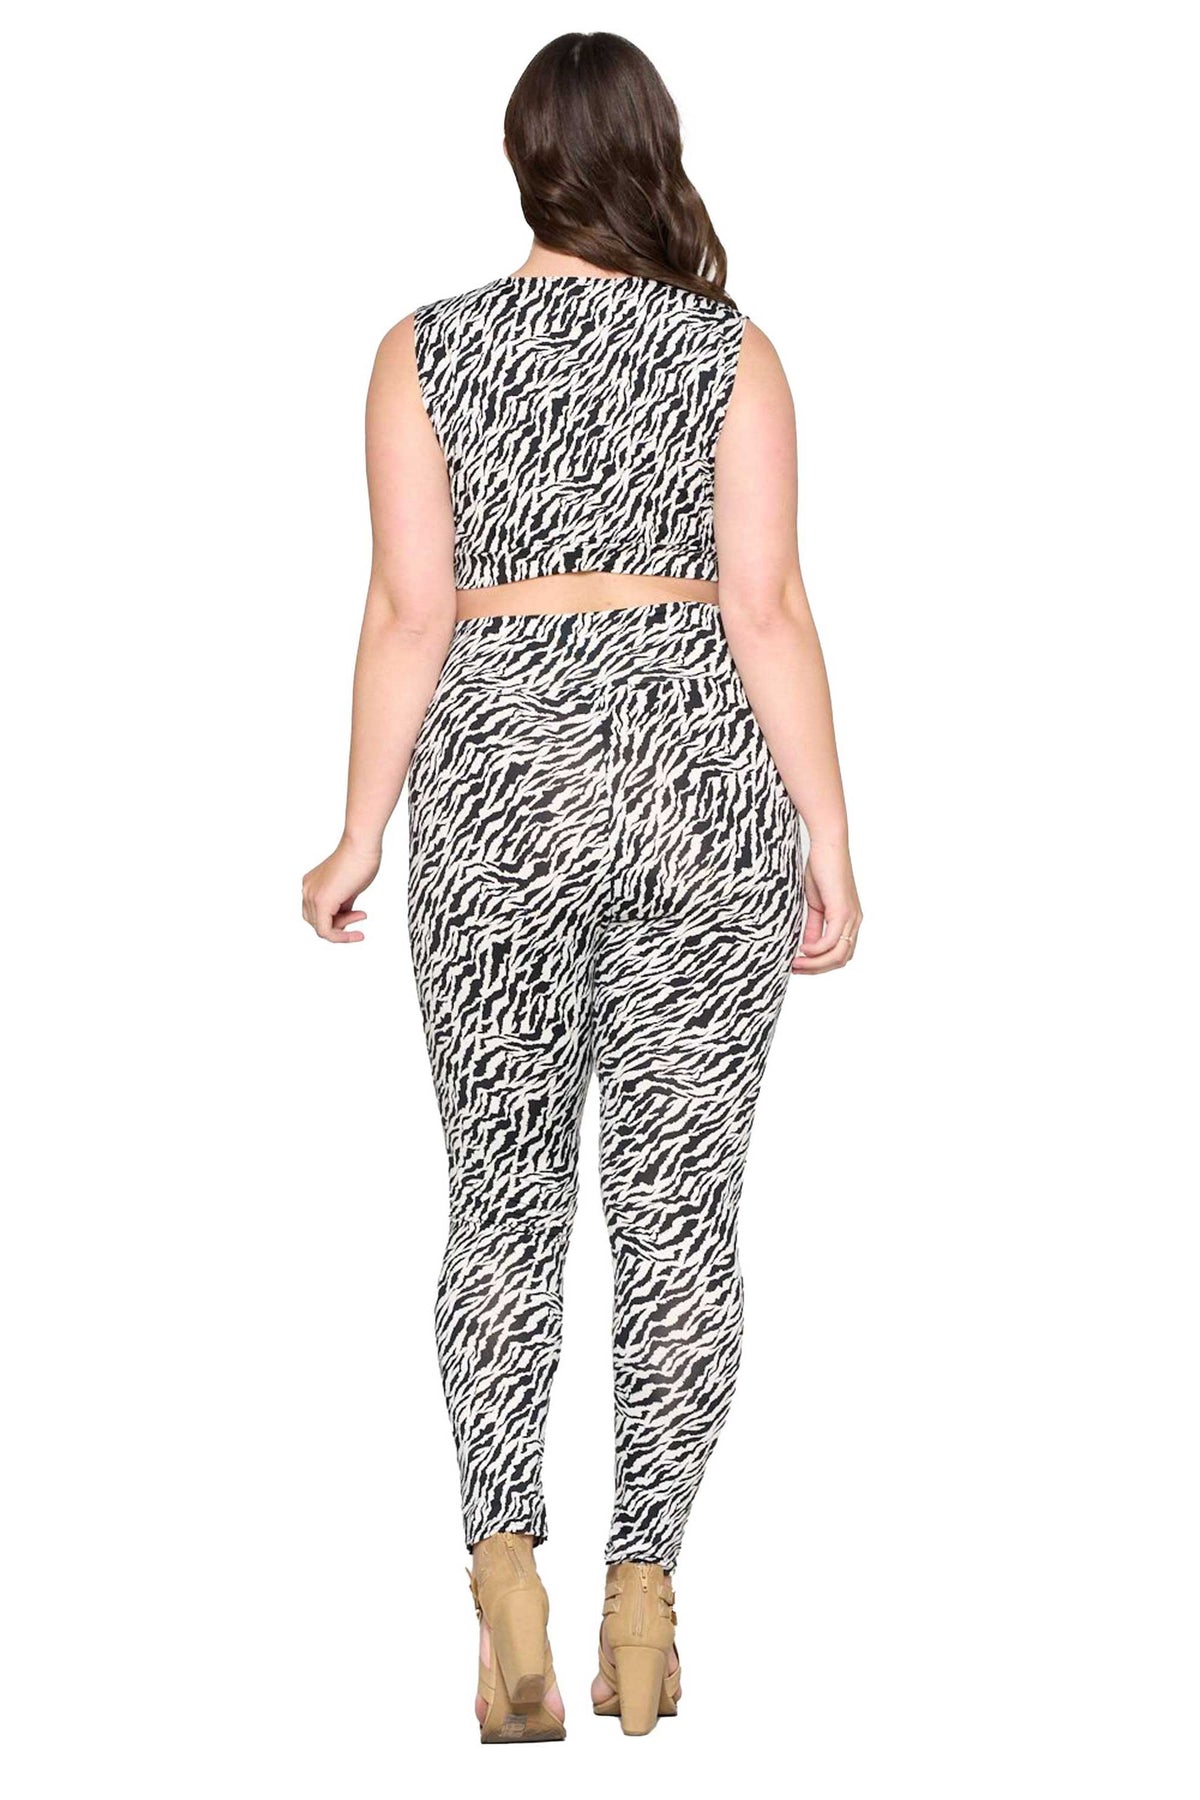 livd apparel plus size boutique zebra yoga leggings